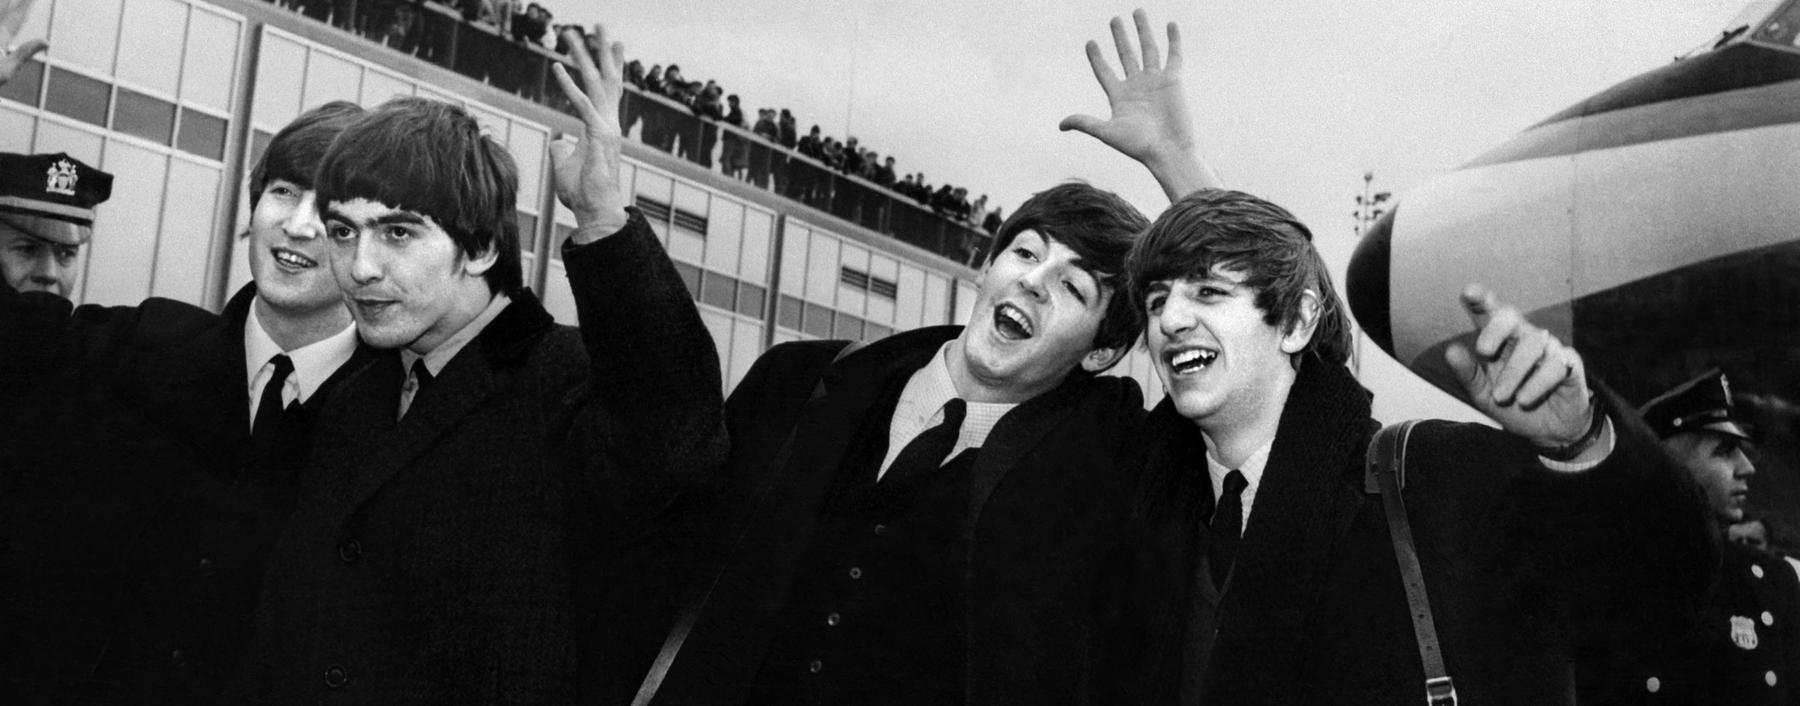 Waren die 1960er mit den Beatles das musikalisch beste Jahrzehnt? Nun, es kommt drauf an.